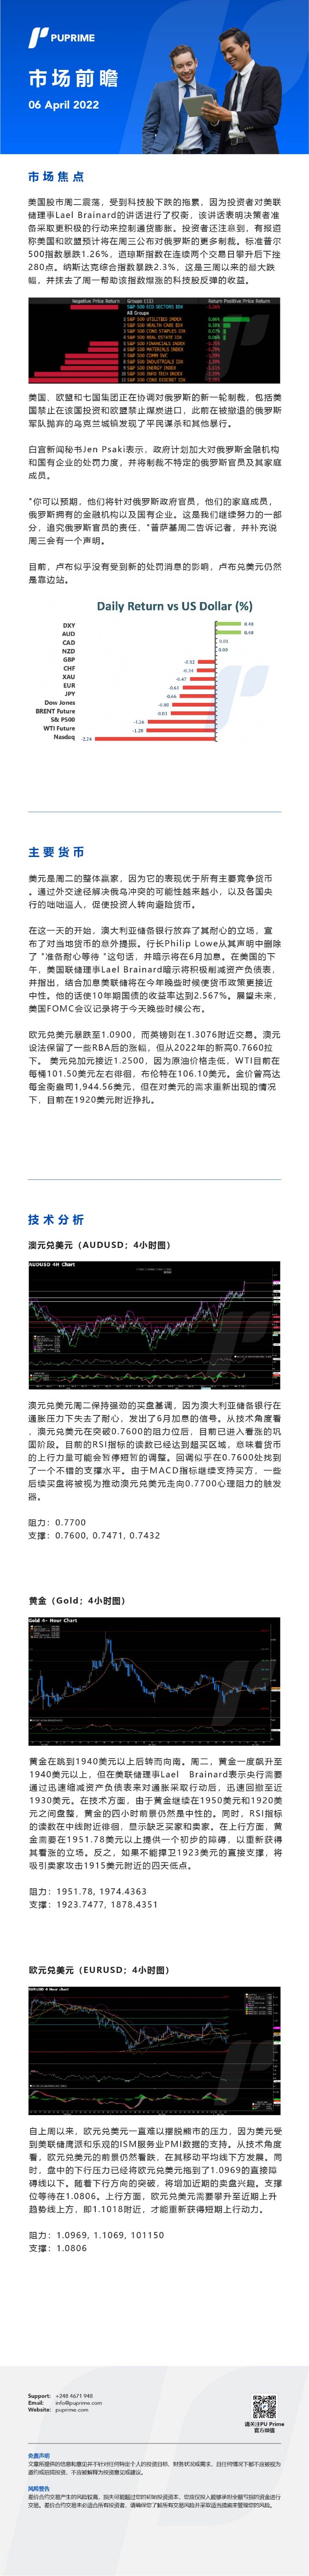 06042022 Daily Market Analysis__CHN.jpg